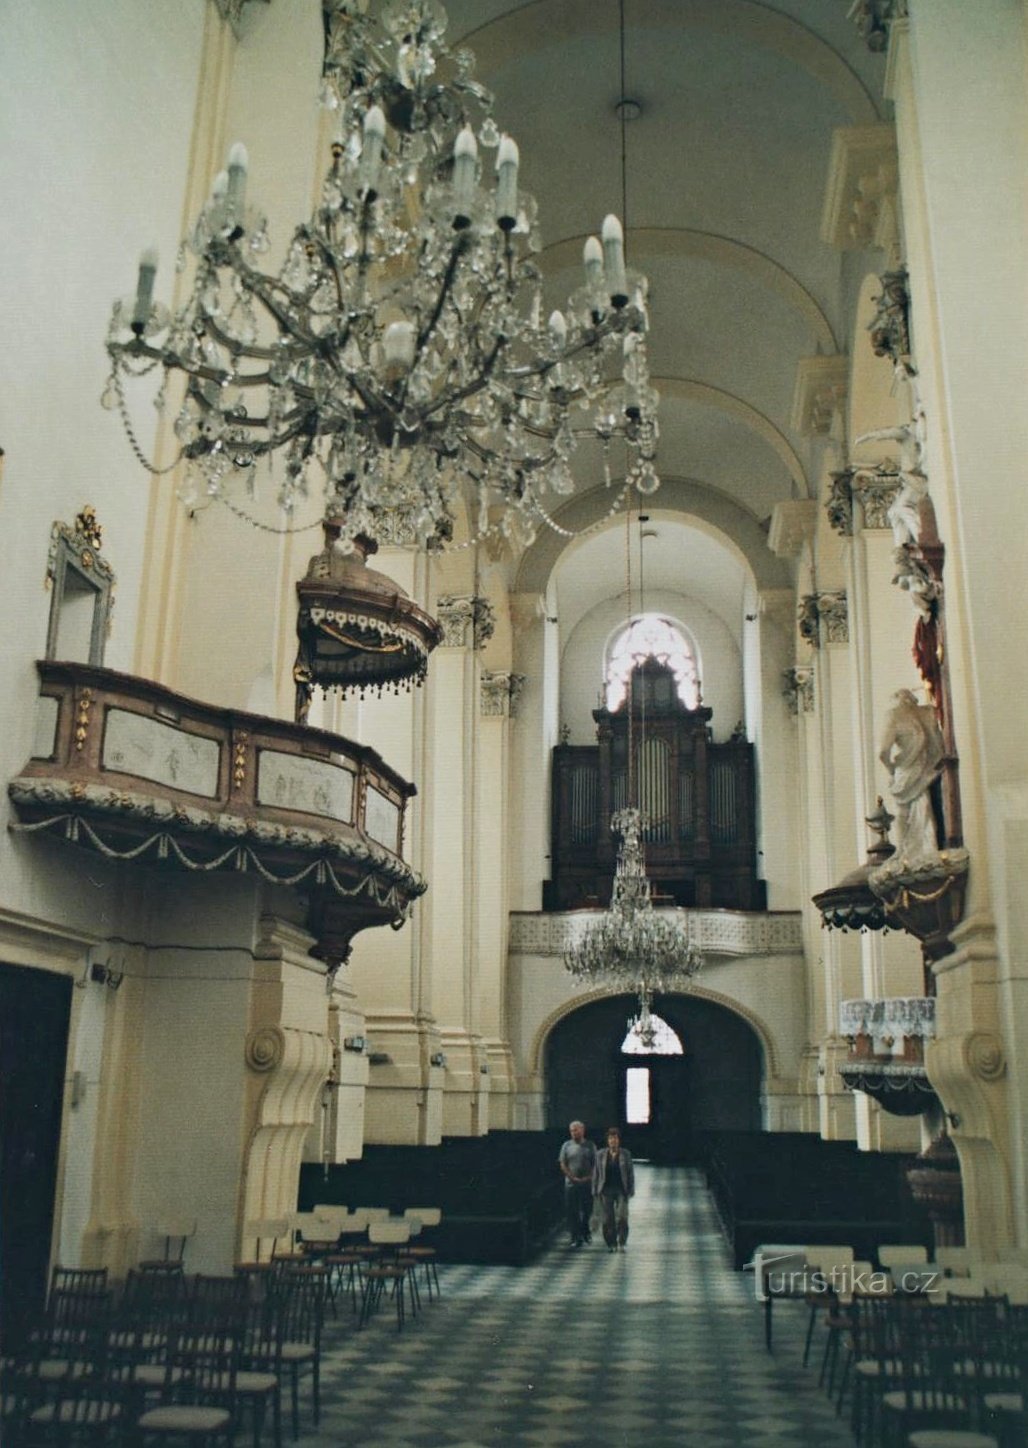 katedralens indre